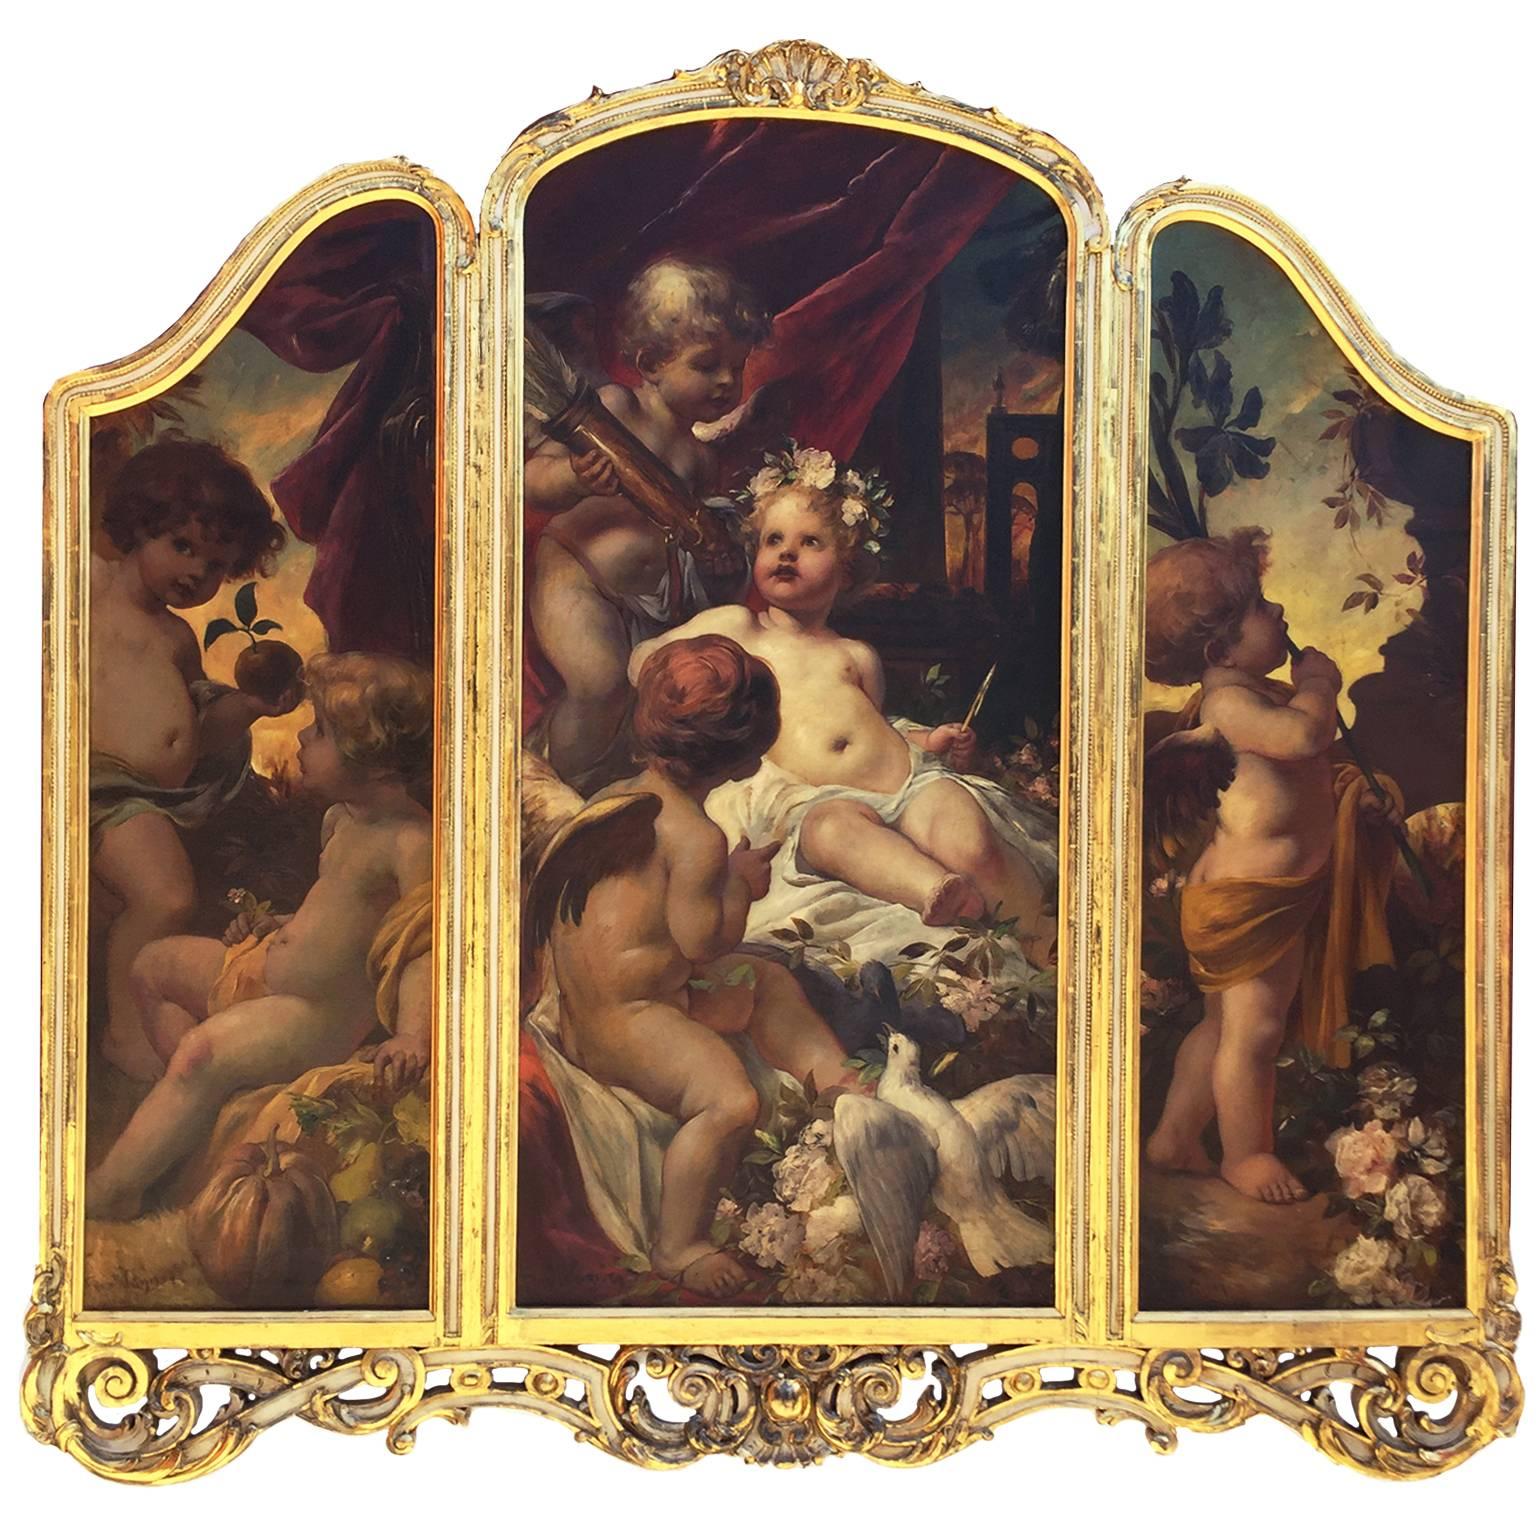 Deutsches Ölgemälde auf Leinwand, Triptychon mit Putten, Ferdinand Wagner II, 19. Jahrhundert